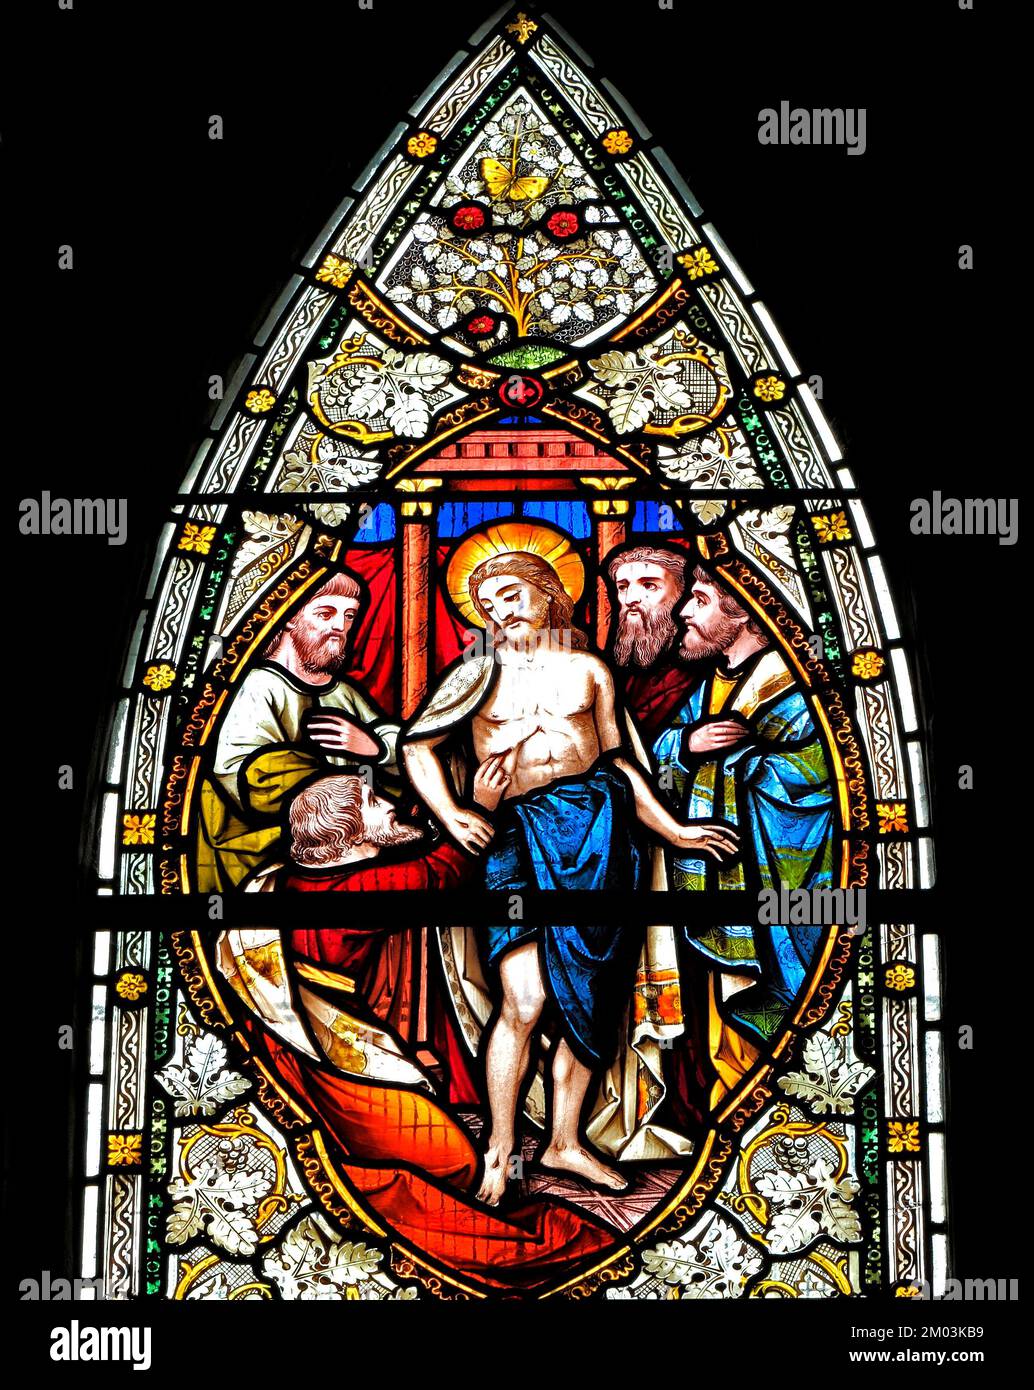 Thomas berührte die Speerwunde Jesu, von ward & Hughes, 1869, Buntglasfenster, Stanhoe, Norfolk, England, Großbritannien Stockfoto